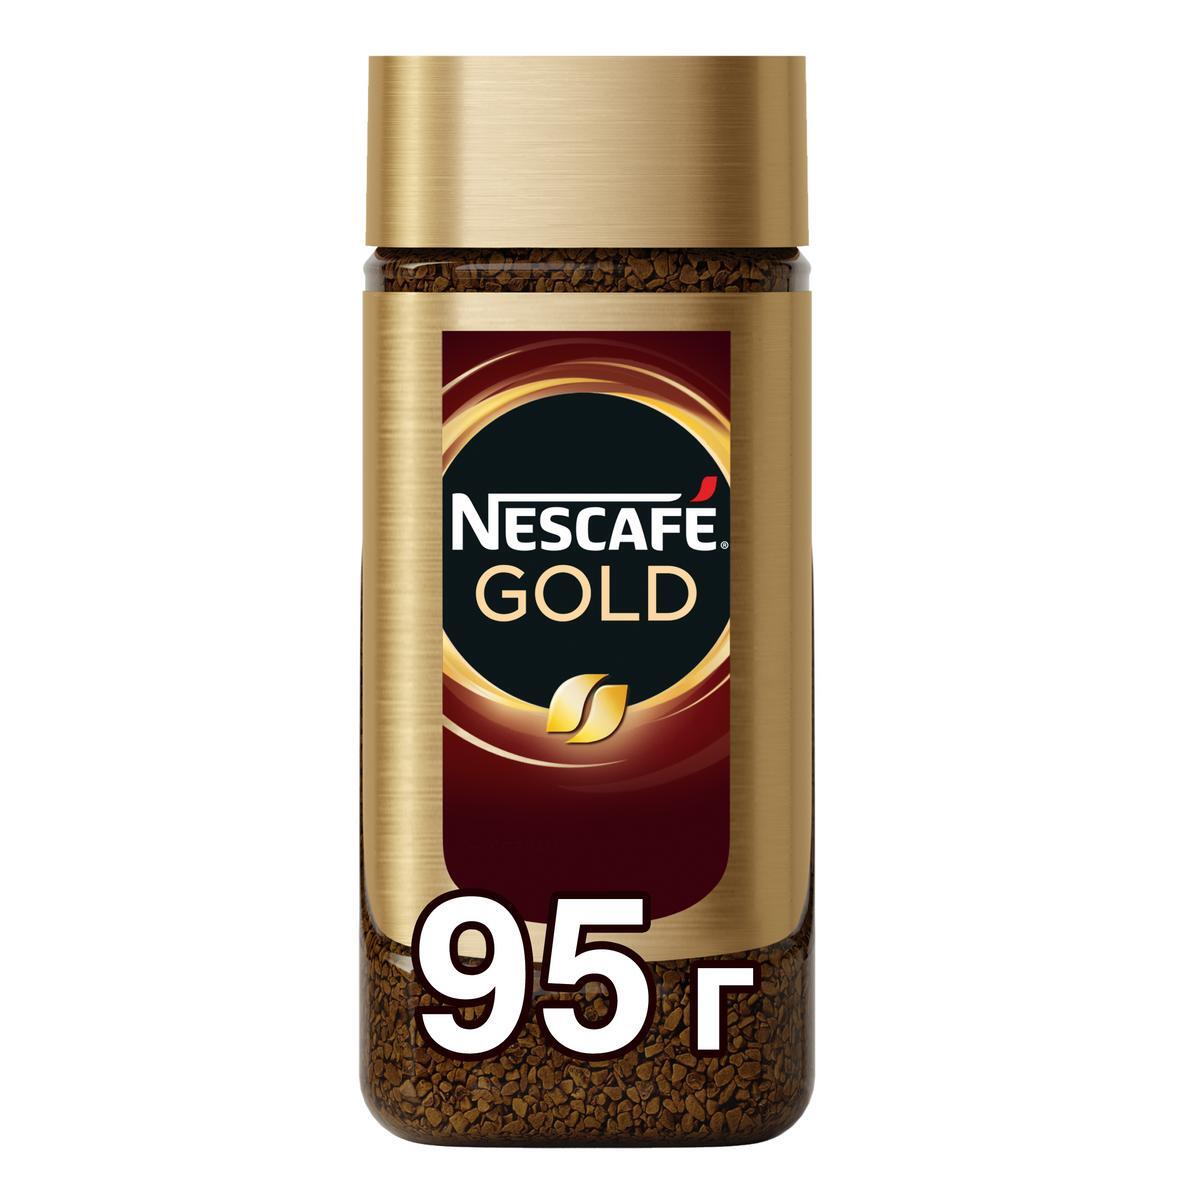 Nescafe gold сублимированный. Кофе Nescafe Gold, 95гр. Кофе Нескафе Голд 95г ст/б. Кофе Нескафе Голд 95 гр. Кофе Nescafe Gold 95г ст/б.